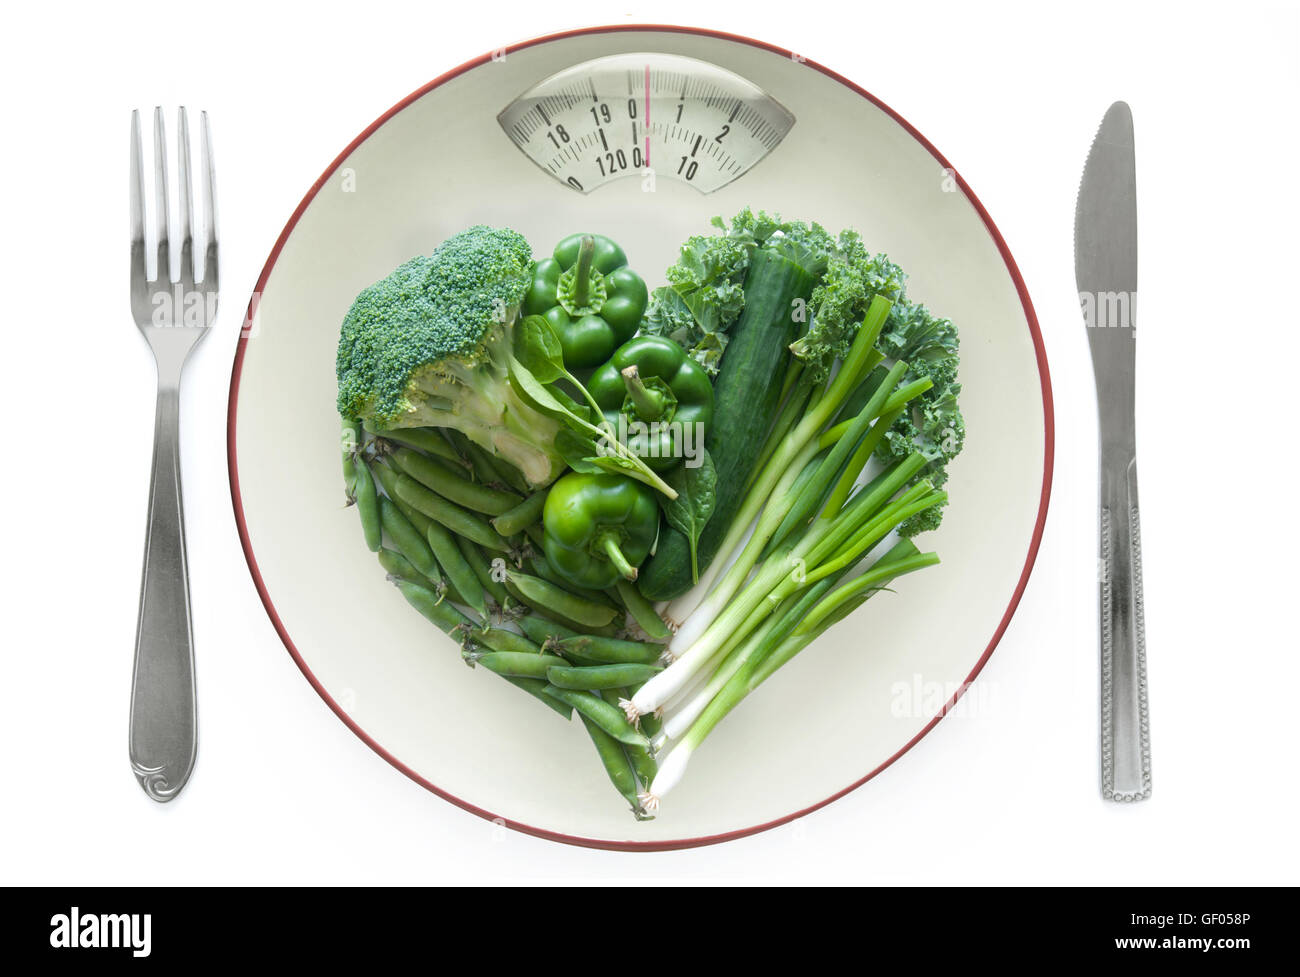 Diät-Konzept, Herz geformt grünes Gemüse auf einem Teller mit wiegen Waage Monitor über einen weißen Hintergrund Stockfoto